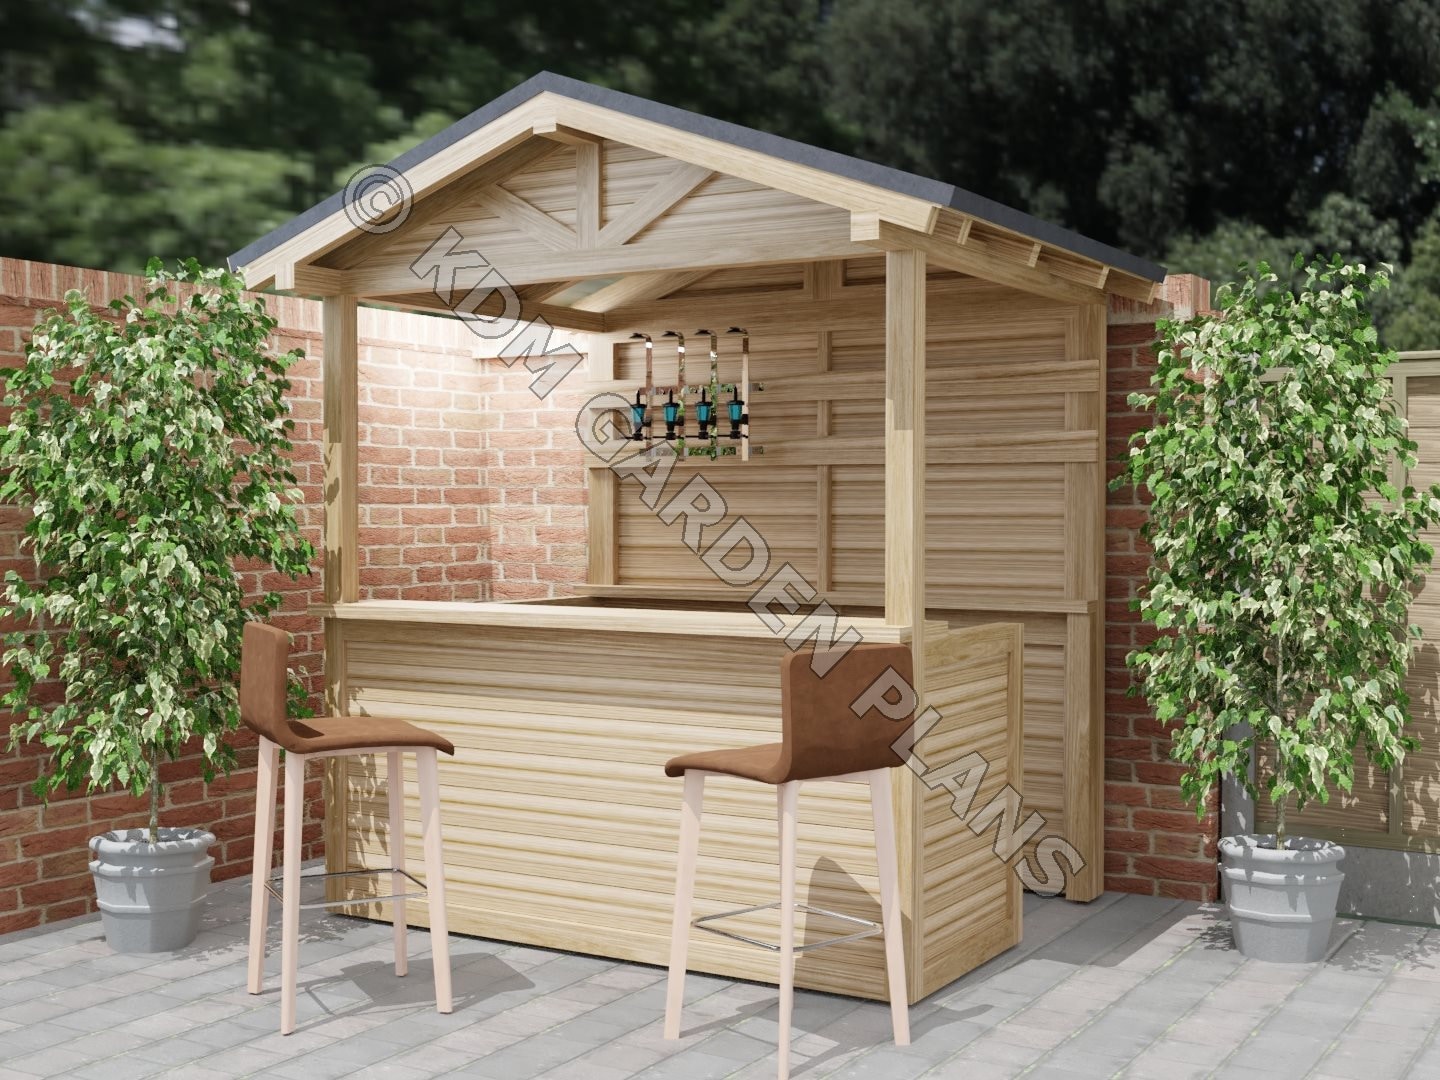 Pläne für Home Bar Outdoor Schrägdach 2mx1,5m Tiki DIY Digital Woodwork  Plans Only UK Metric - .de